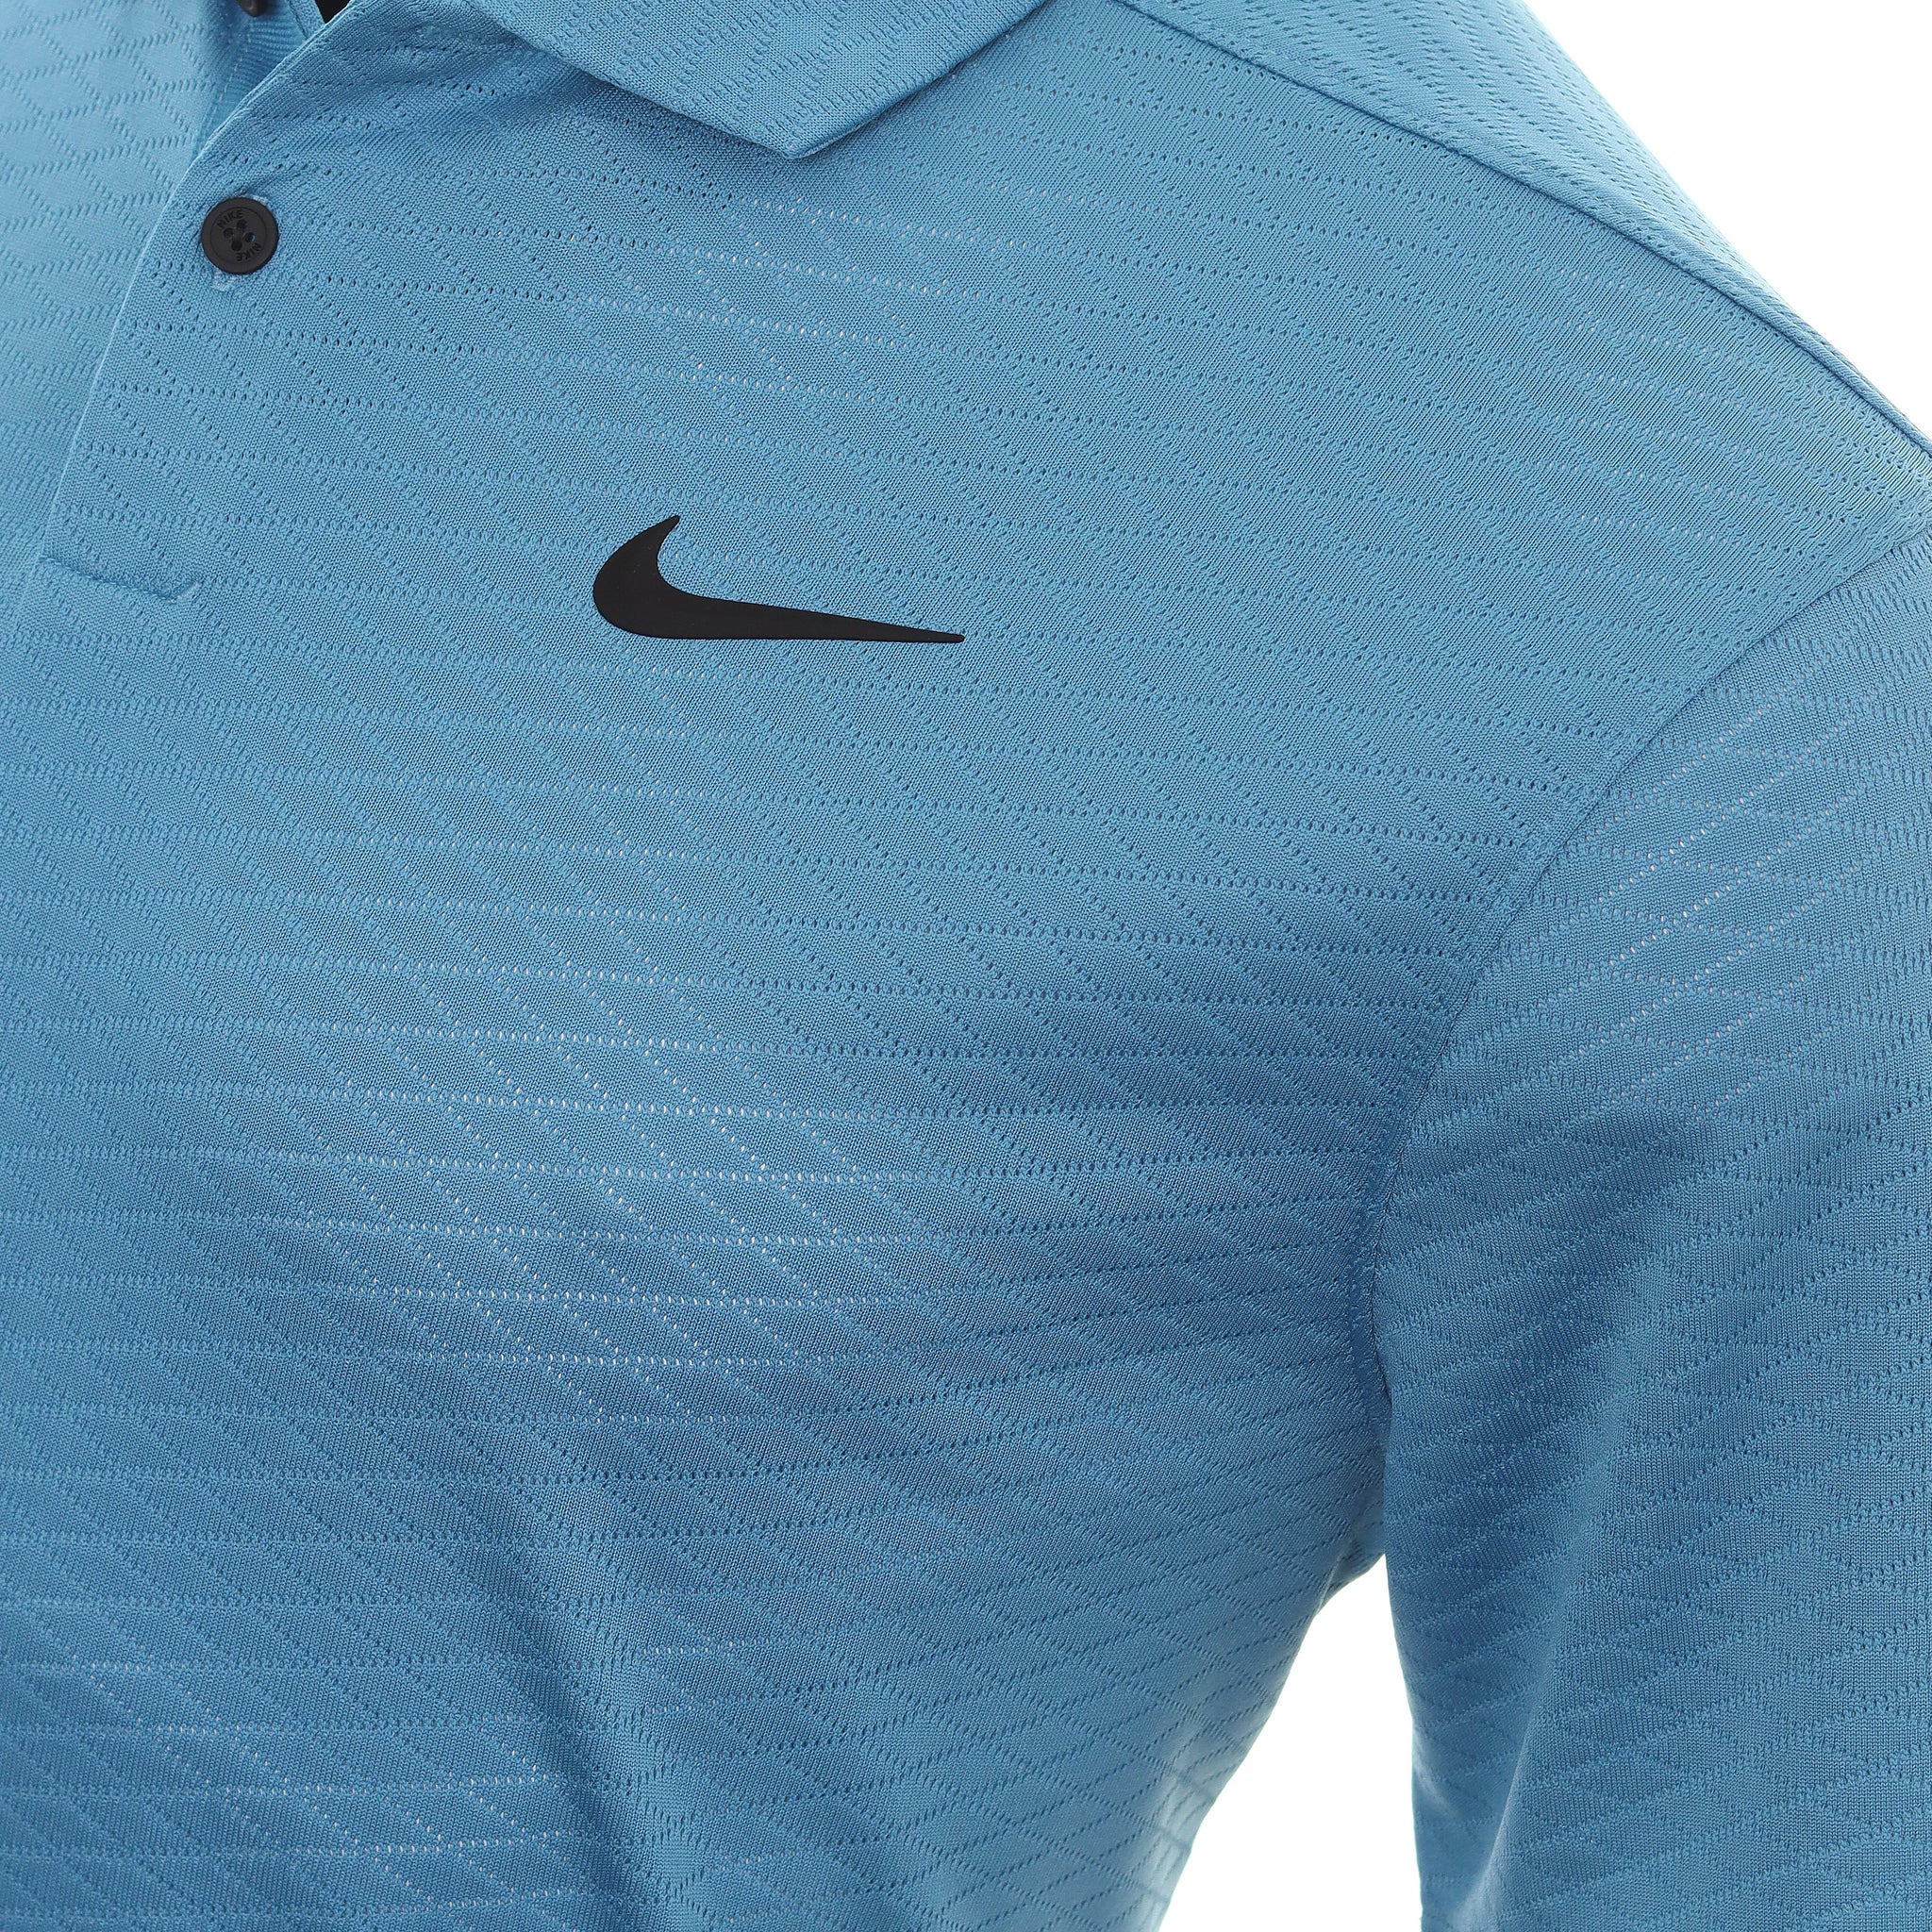 Nike Golf Dri-Fit Vapor Textured Shirt DH0814 Dutch Blue 469 ...